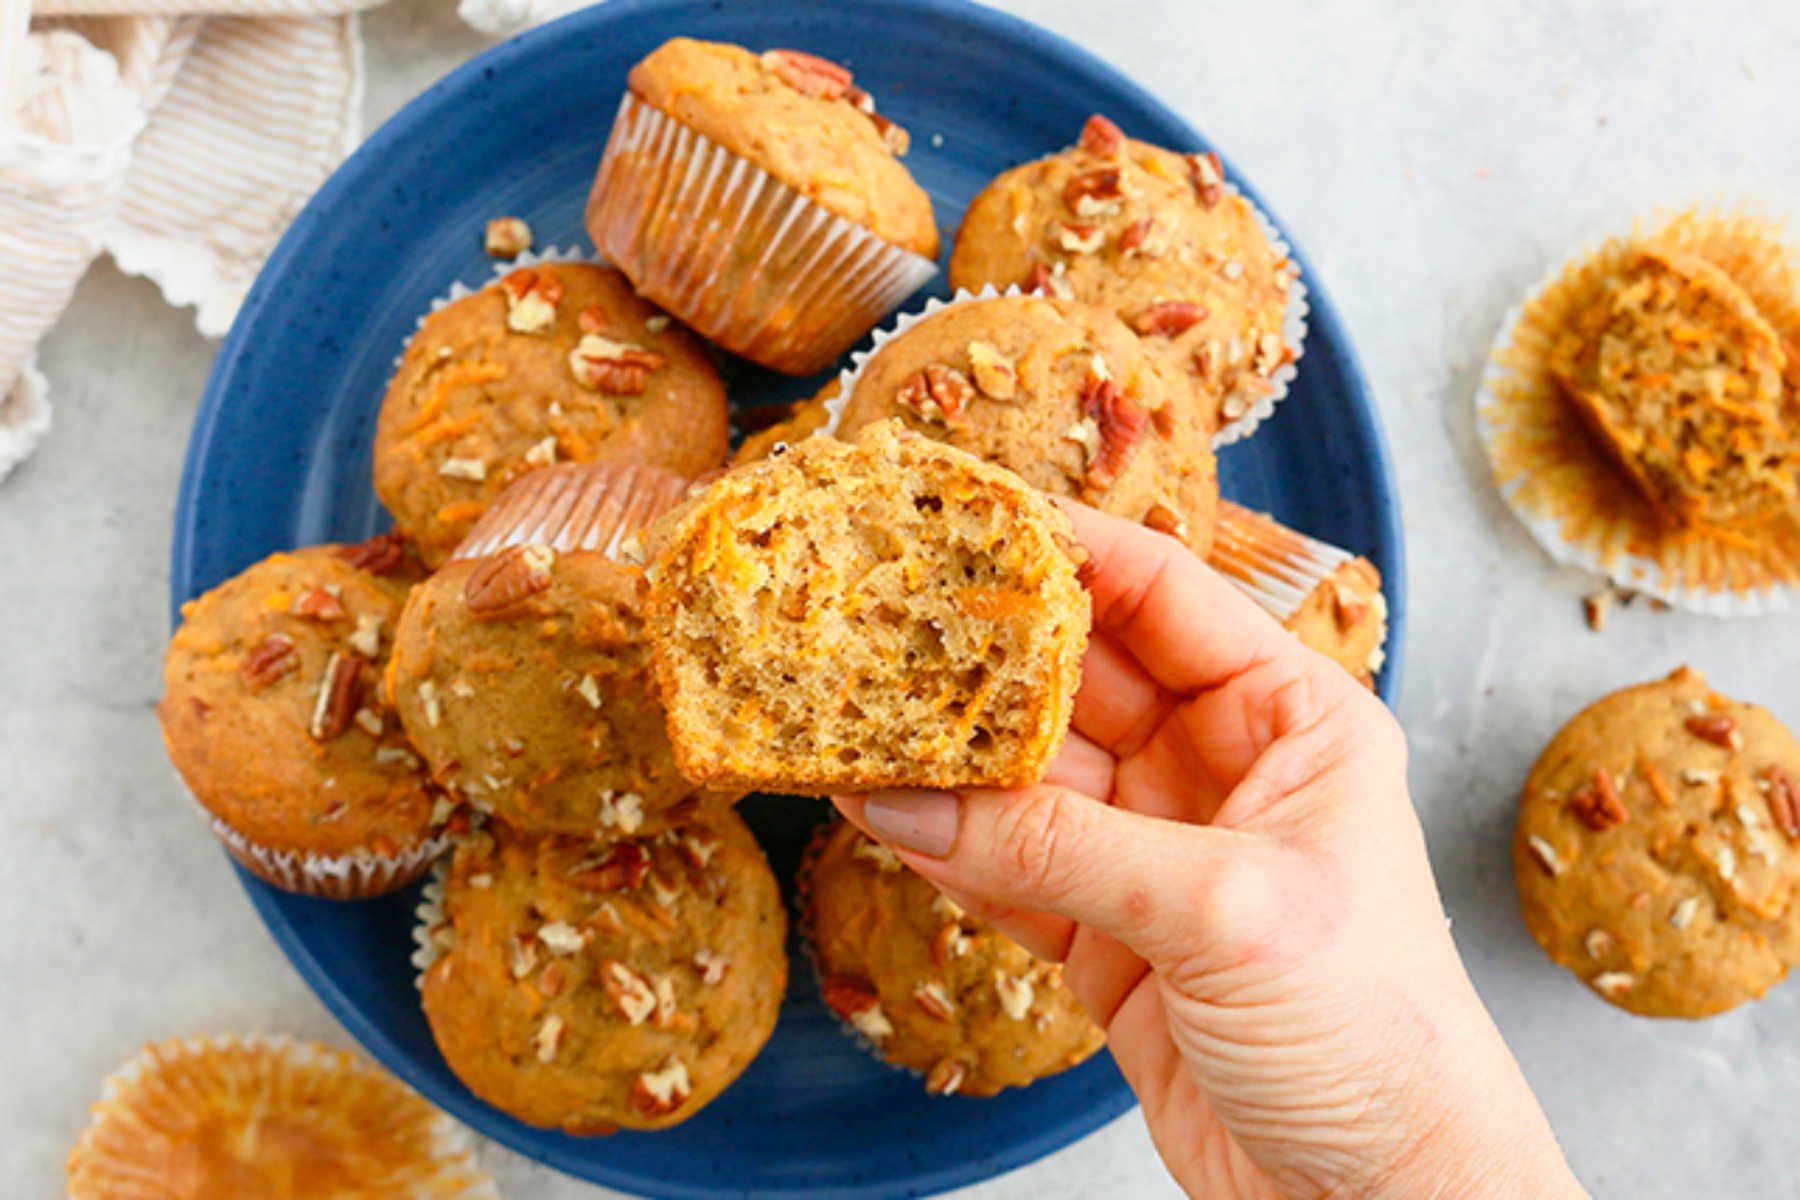 Muffins φέτα αβοκάντο: Αλμυρά muffins με αβοκάντο, γλυκοπατάτα και φέτα